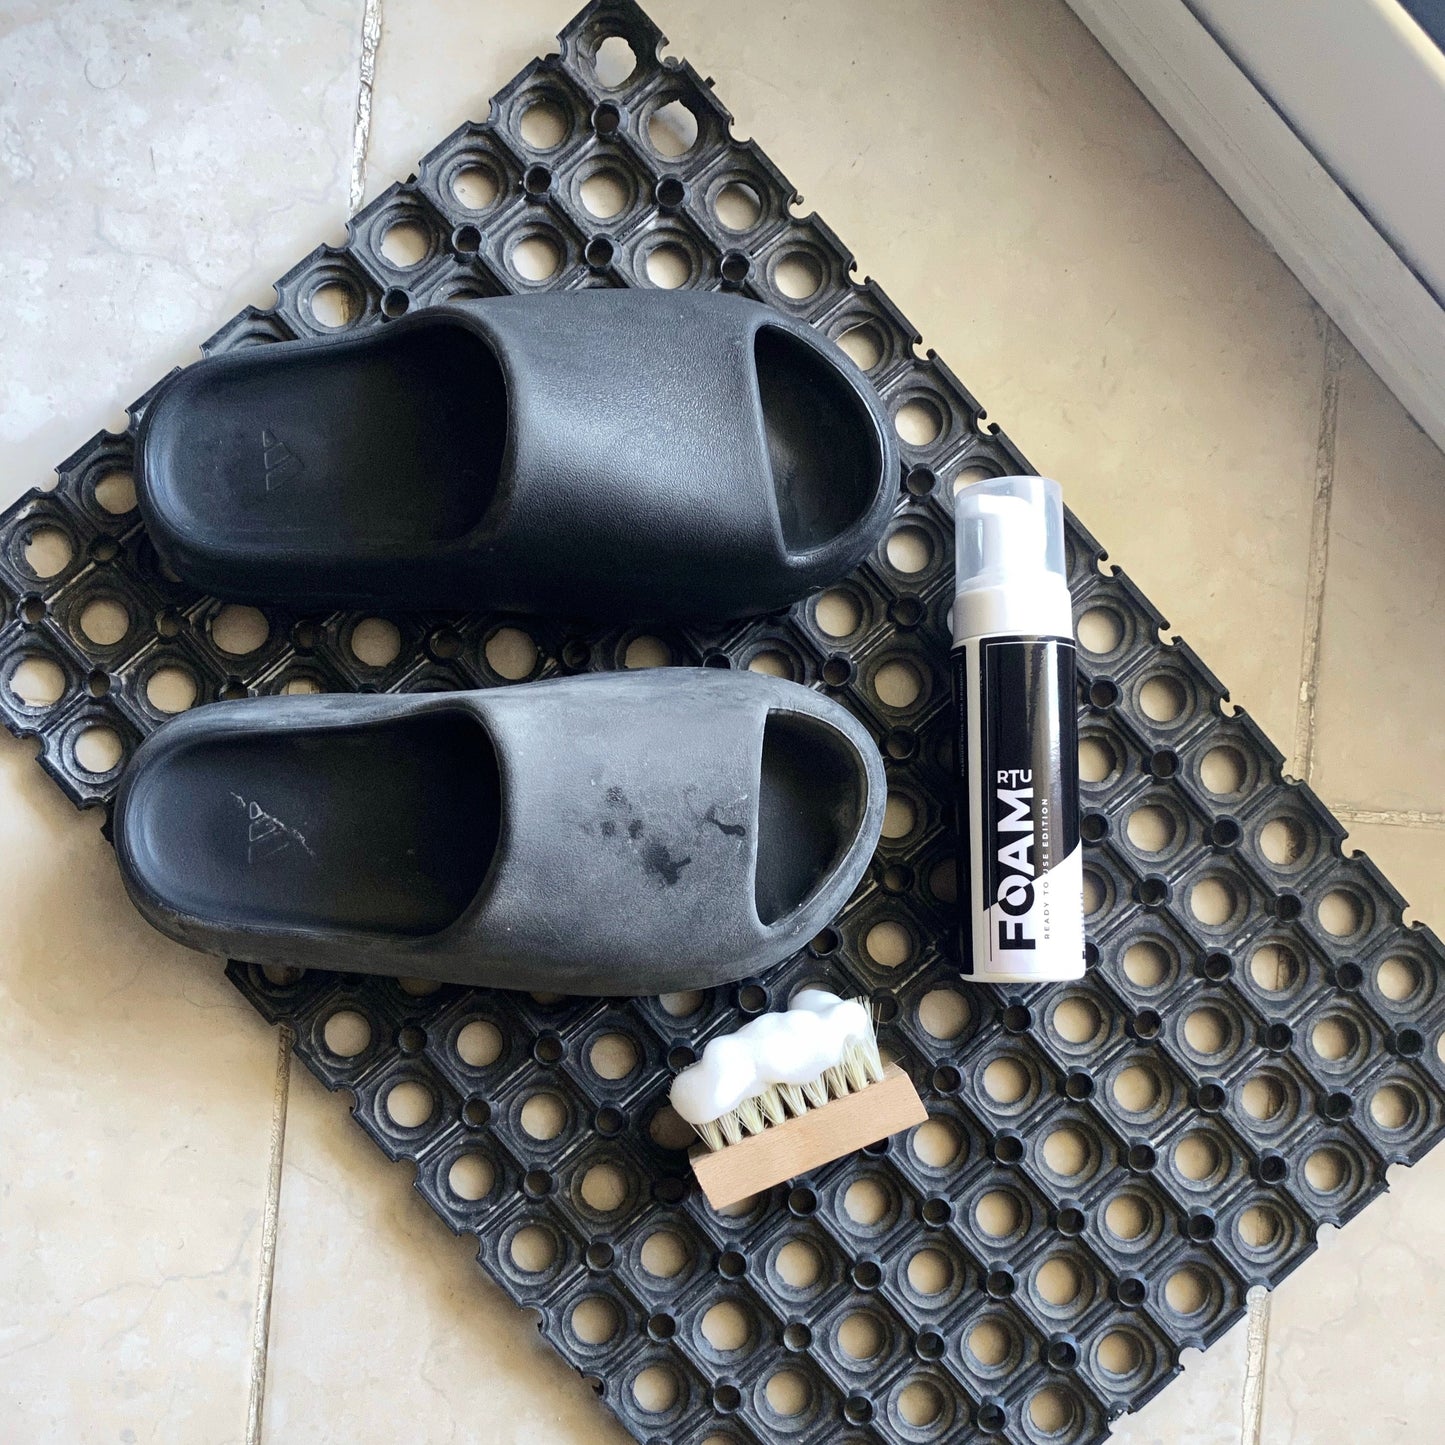 RTU Foam Shoe Cleaner 200ml - Quick Clean